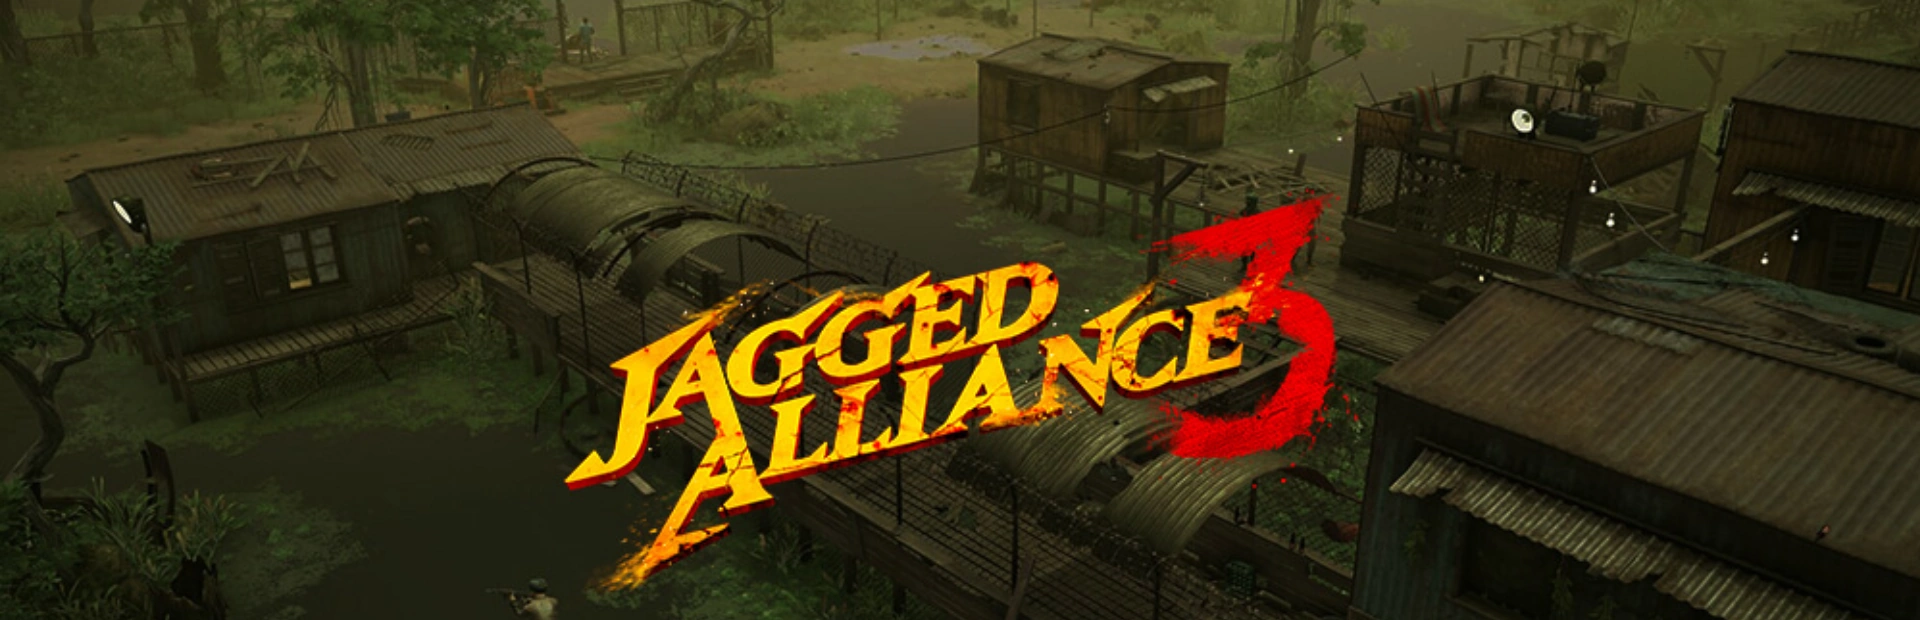 دانلود بازی Jagged Alliance 3 برای کامپیوتر | گیمباتو